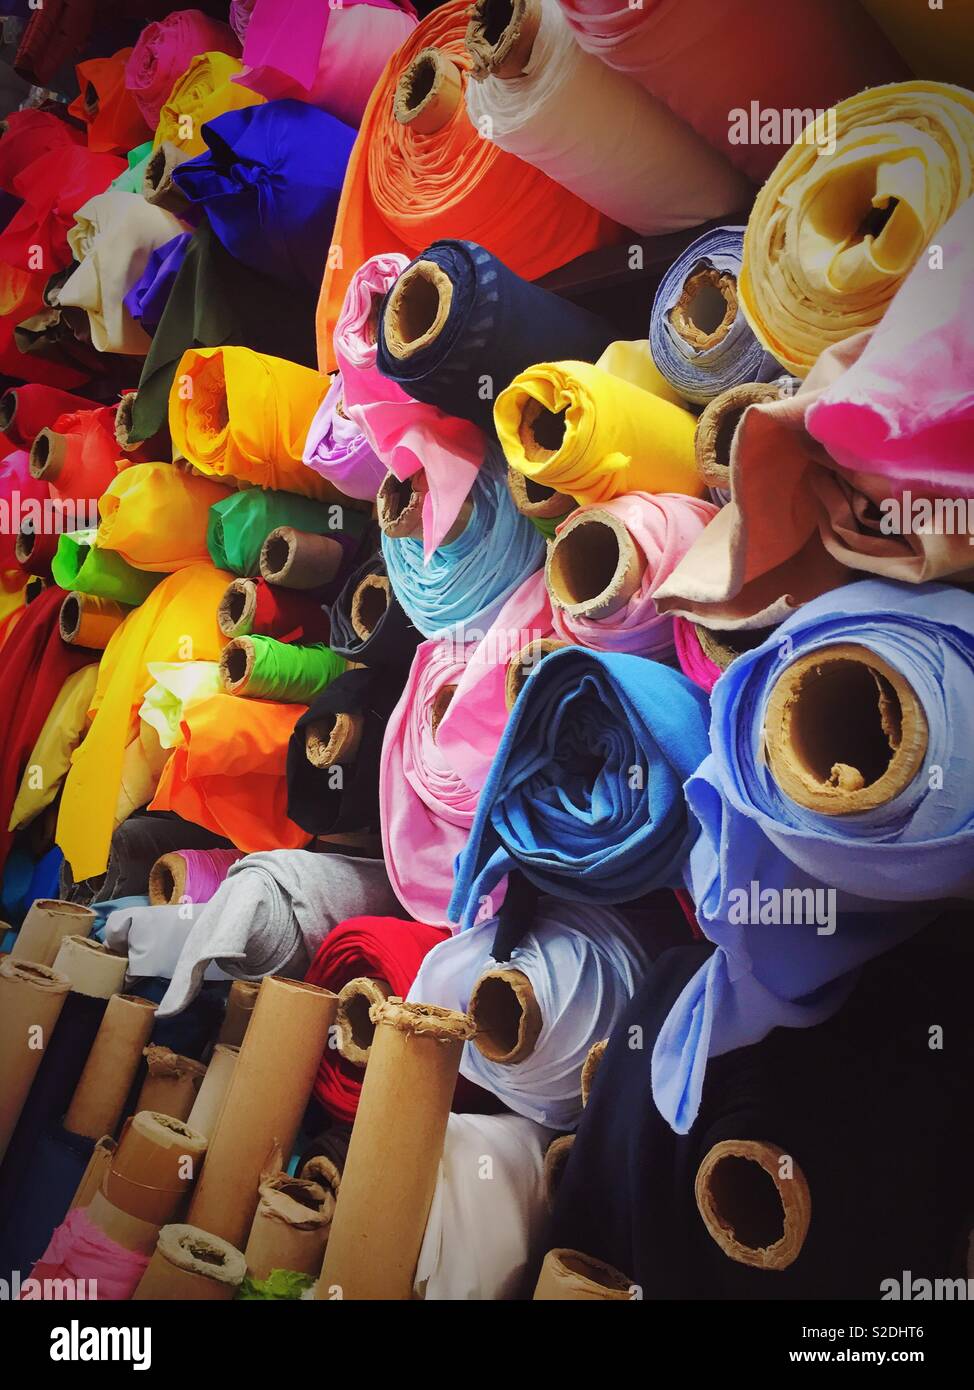 Rouleaux de tissus colorés et un tissu boutique de vente au détail dans le quartier de garment, New York City, USA Banque D'Images